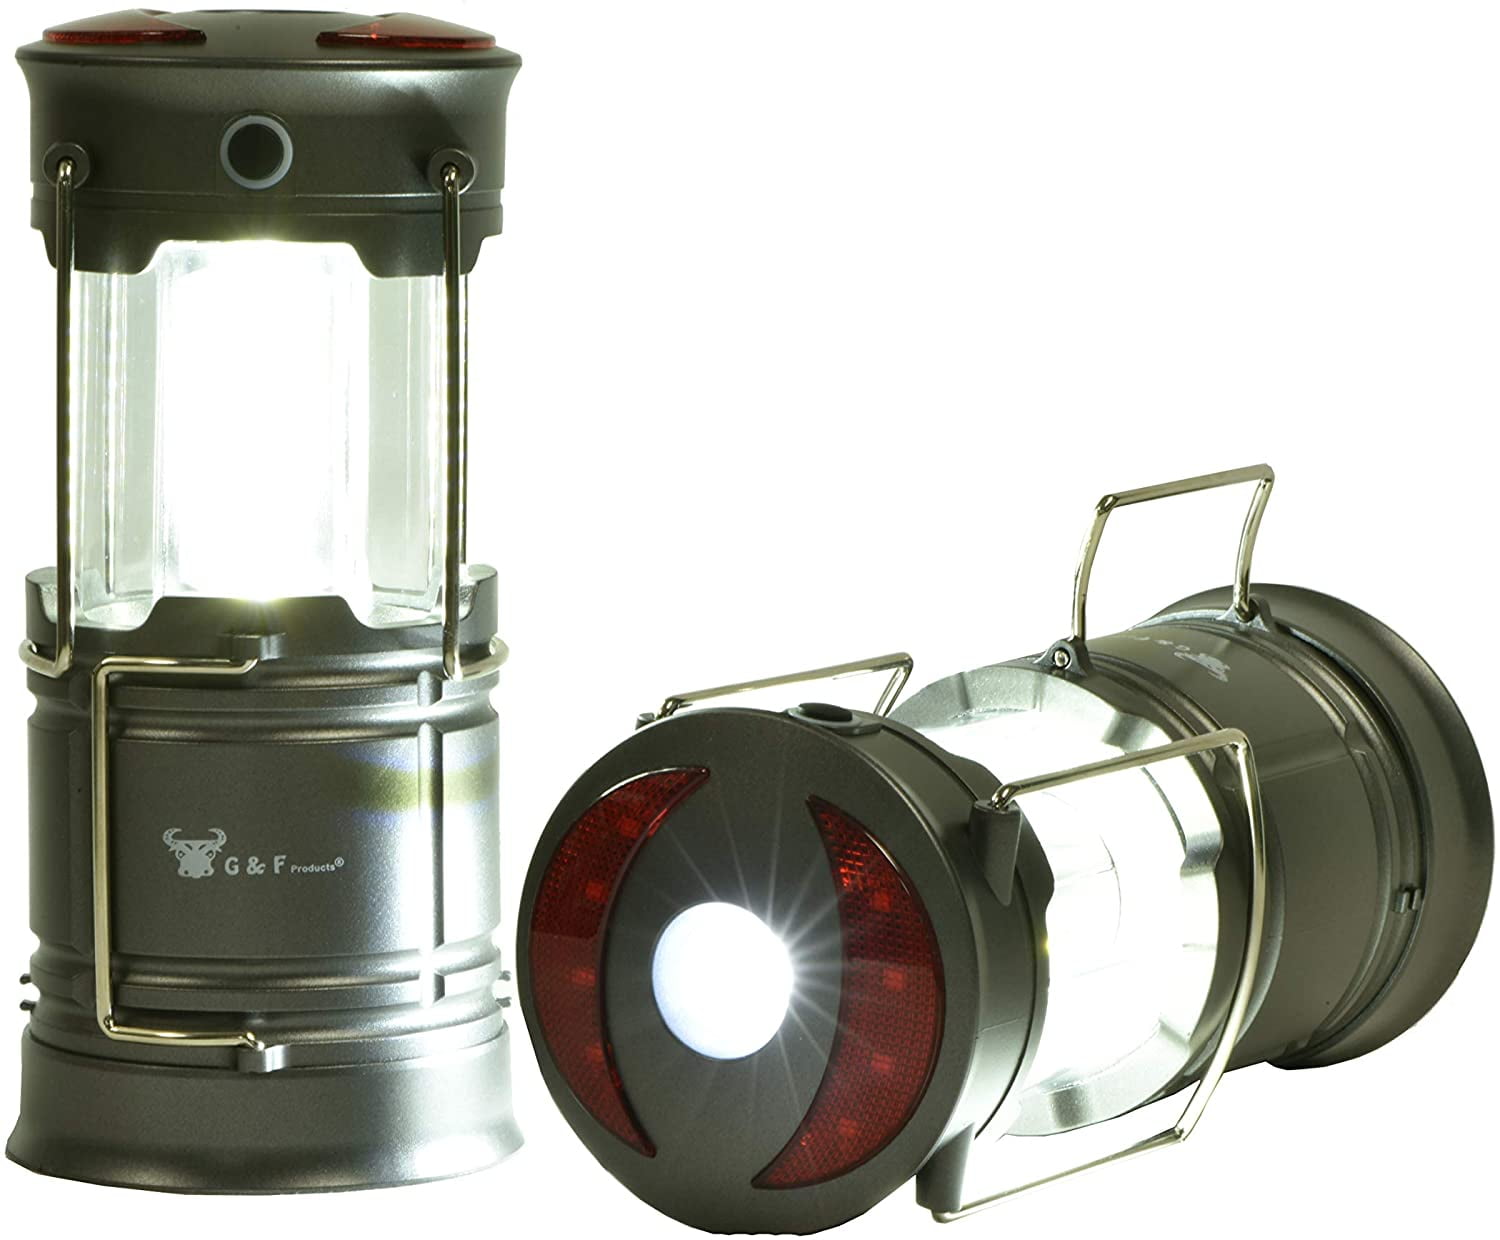 Deux HQRP 3W Broches Ampoule LED Module pour Maglite Krypton Et Xenon 2AA  Lampe